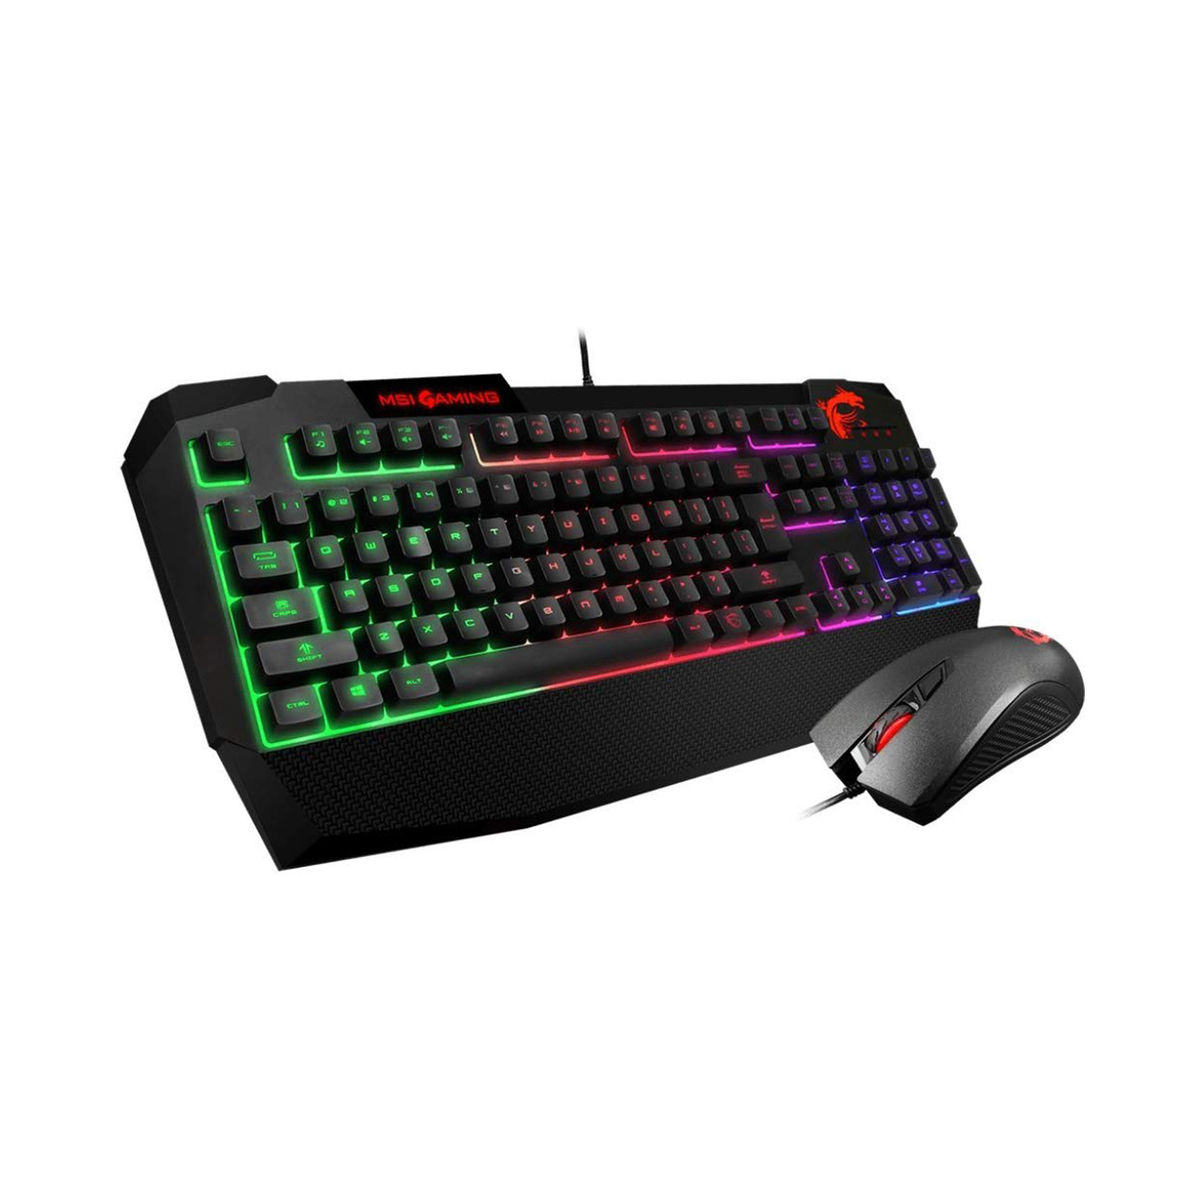 MSI Vigor GK40 Gaming Keyboard and Mouse